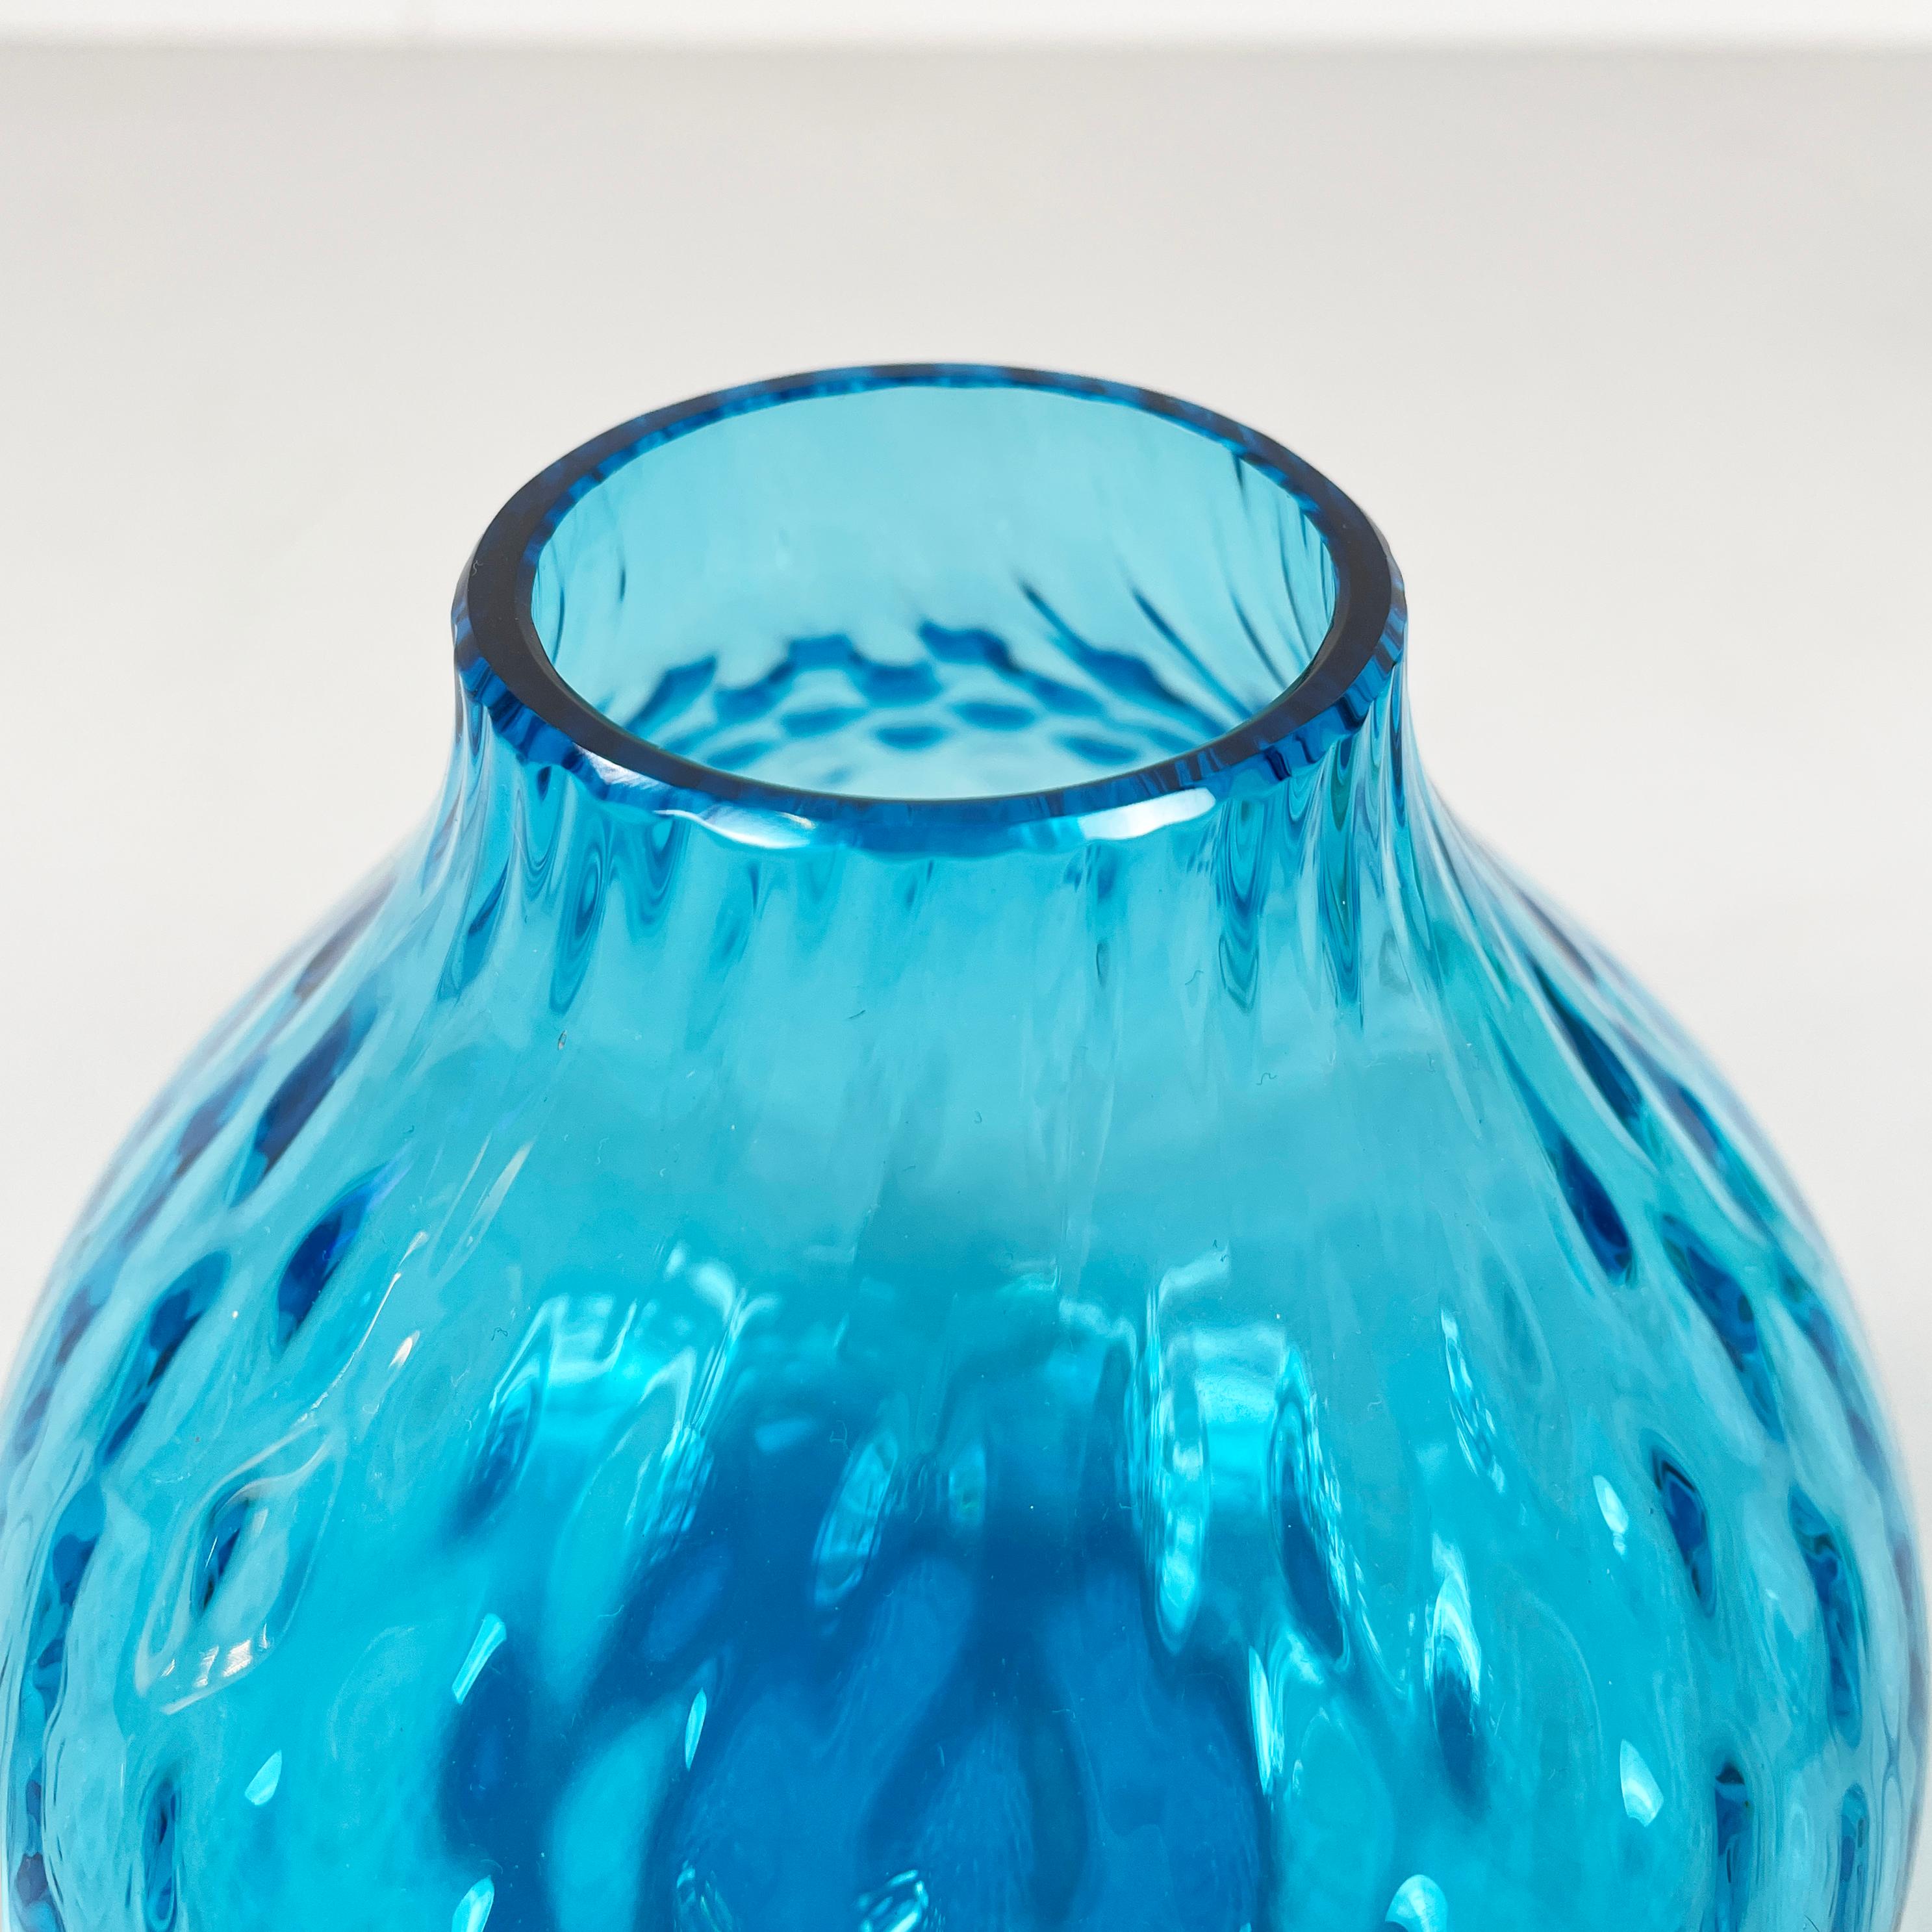 Murano Glass Italian modern Round vase in light blue Murano glass by Venini 1990s